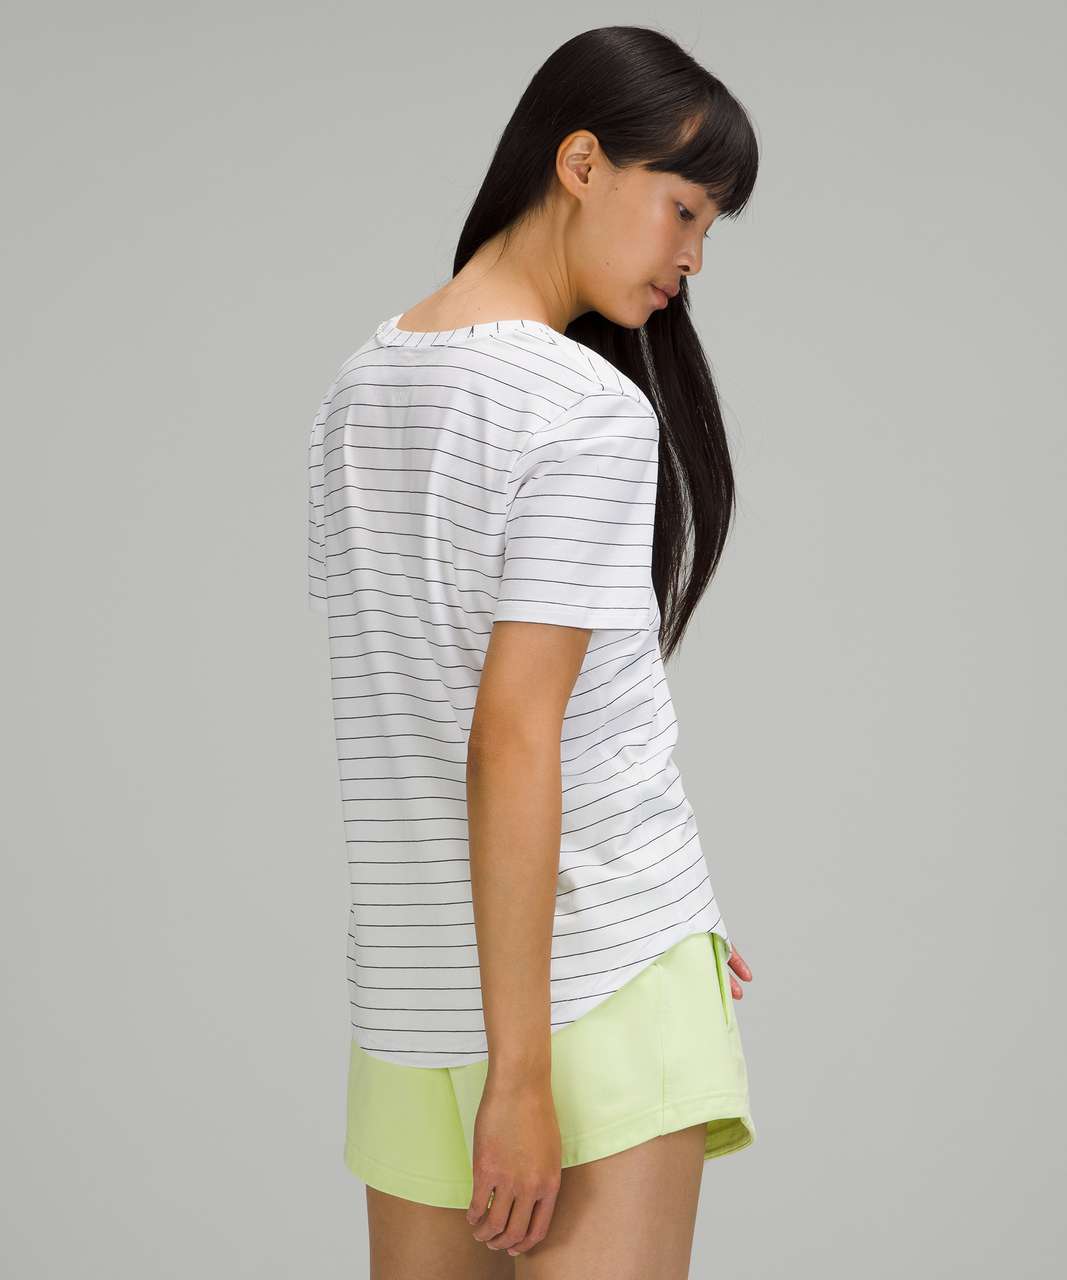 Lululemon Love Tee Short Sleeve V-Neck T-Shirt - Short Serve Stripe White Black